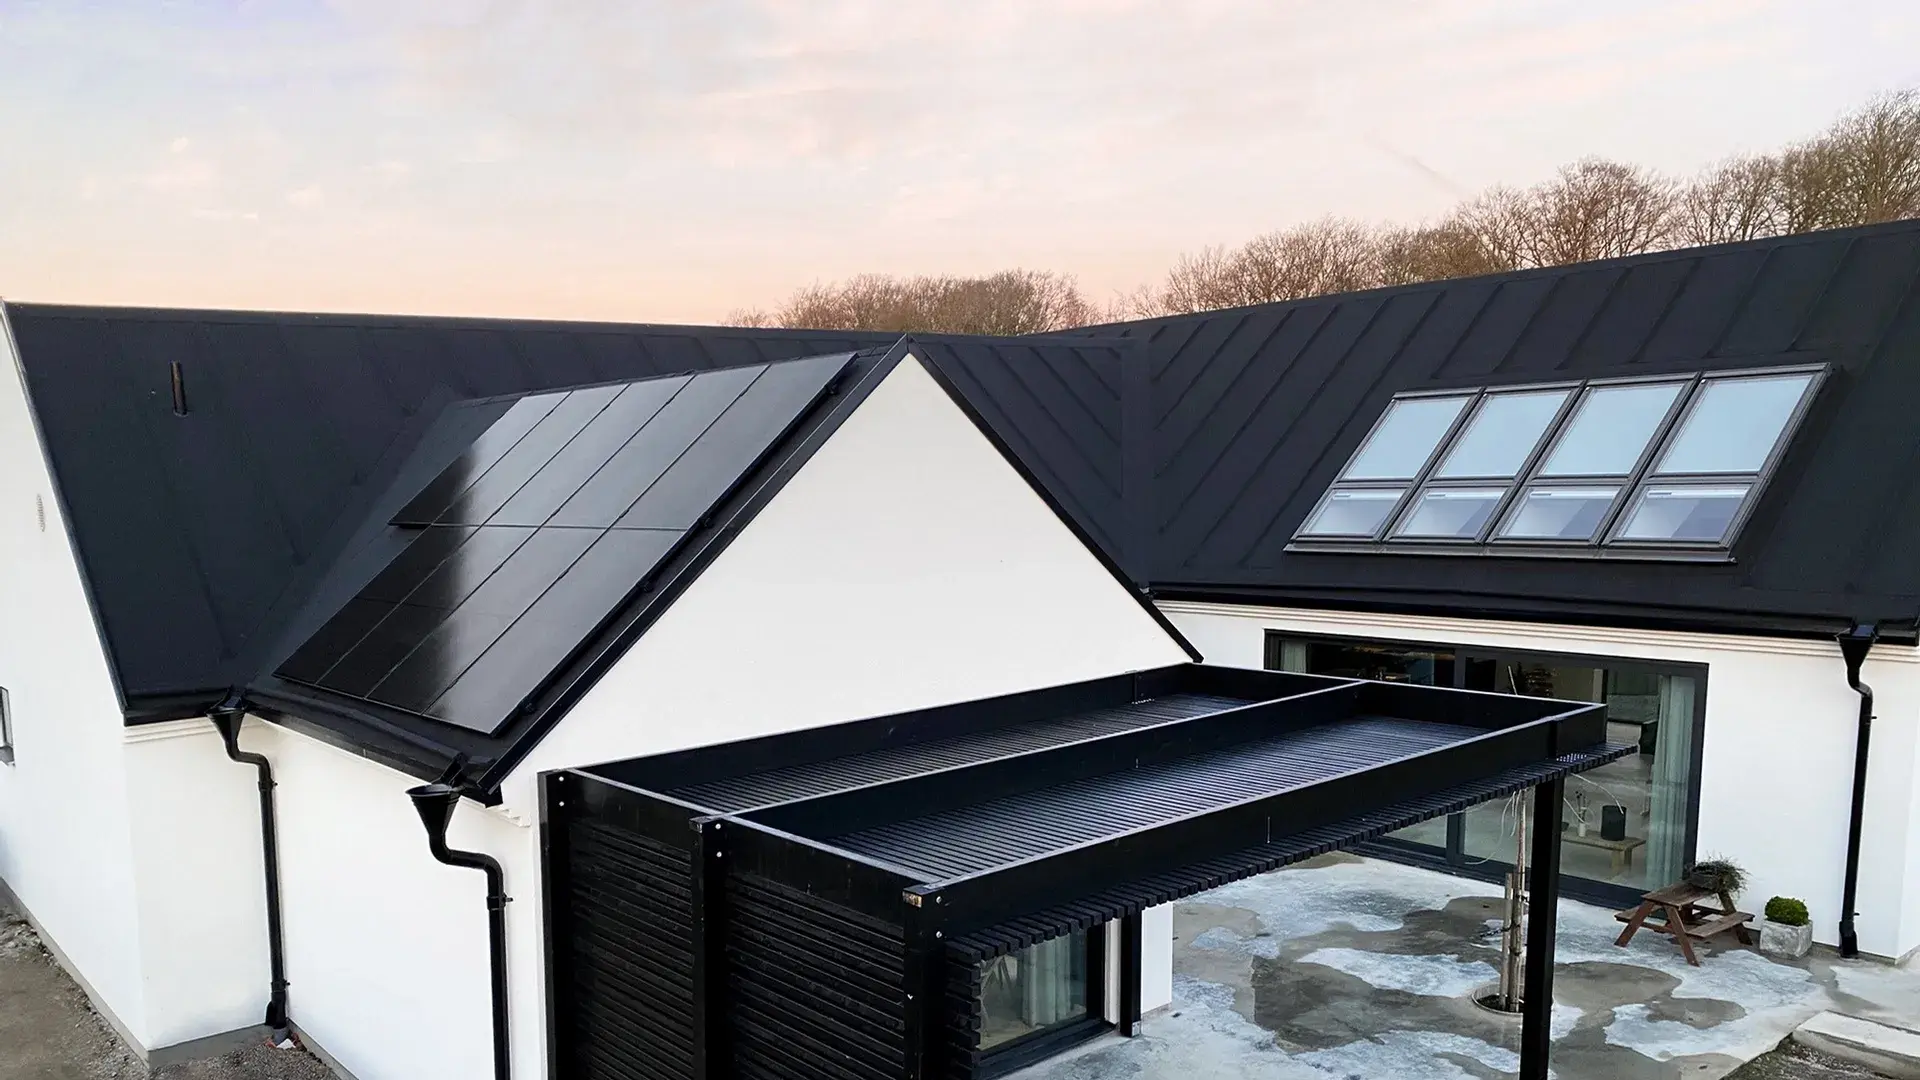 Design i både hus och solceller i Sölvesborg